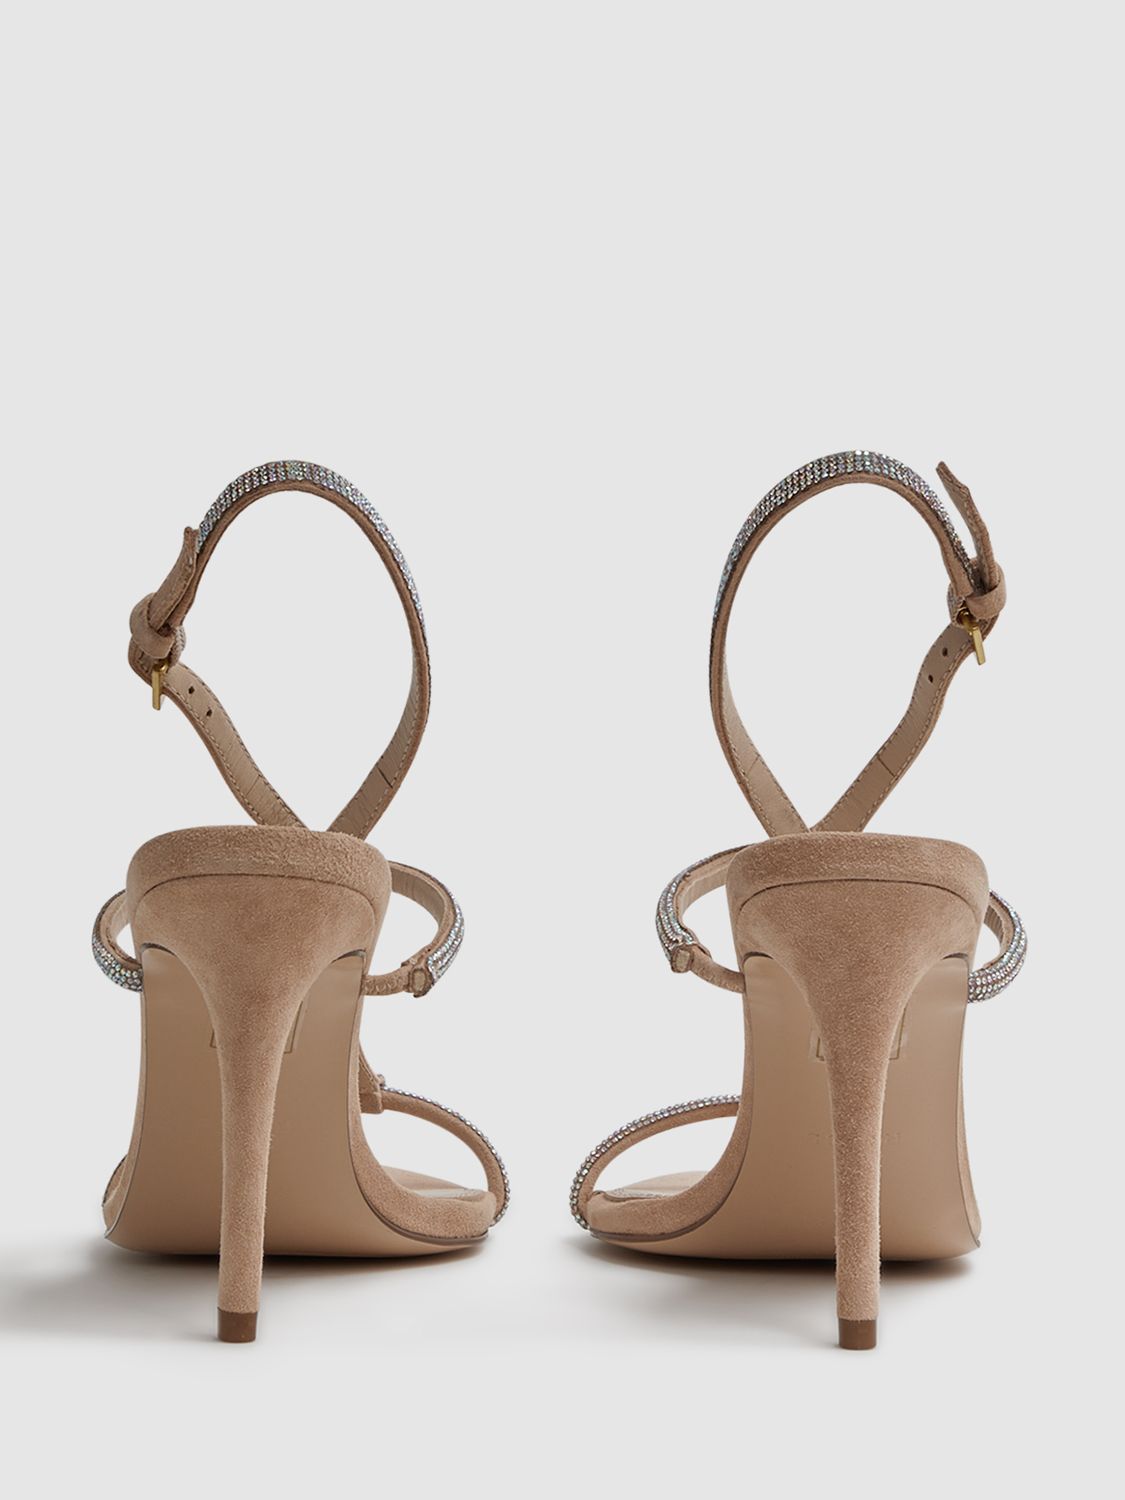 Reiss Julie Embellished High Heeled Sandals, Nude, 3